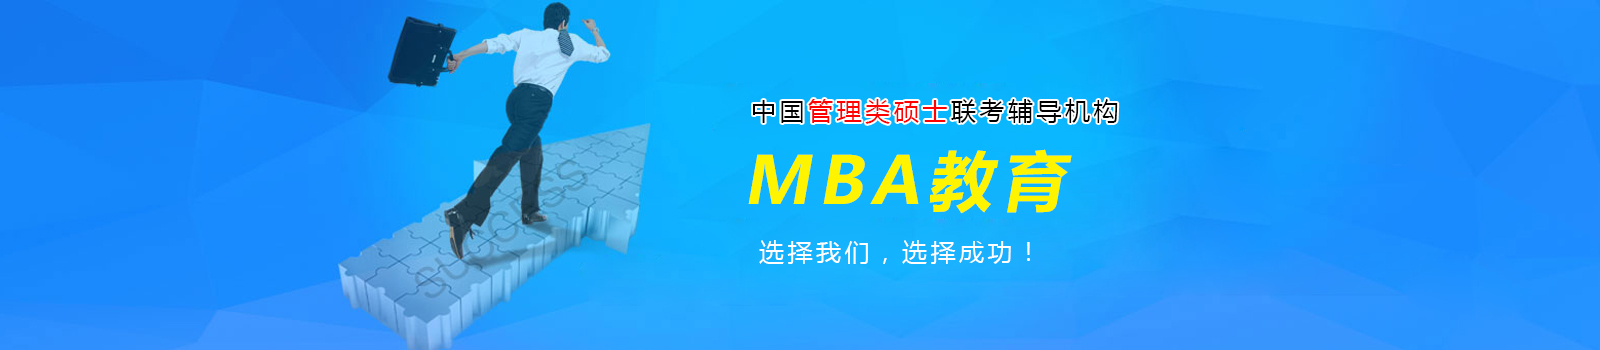 南昌MBA培训学校